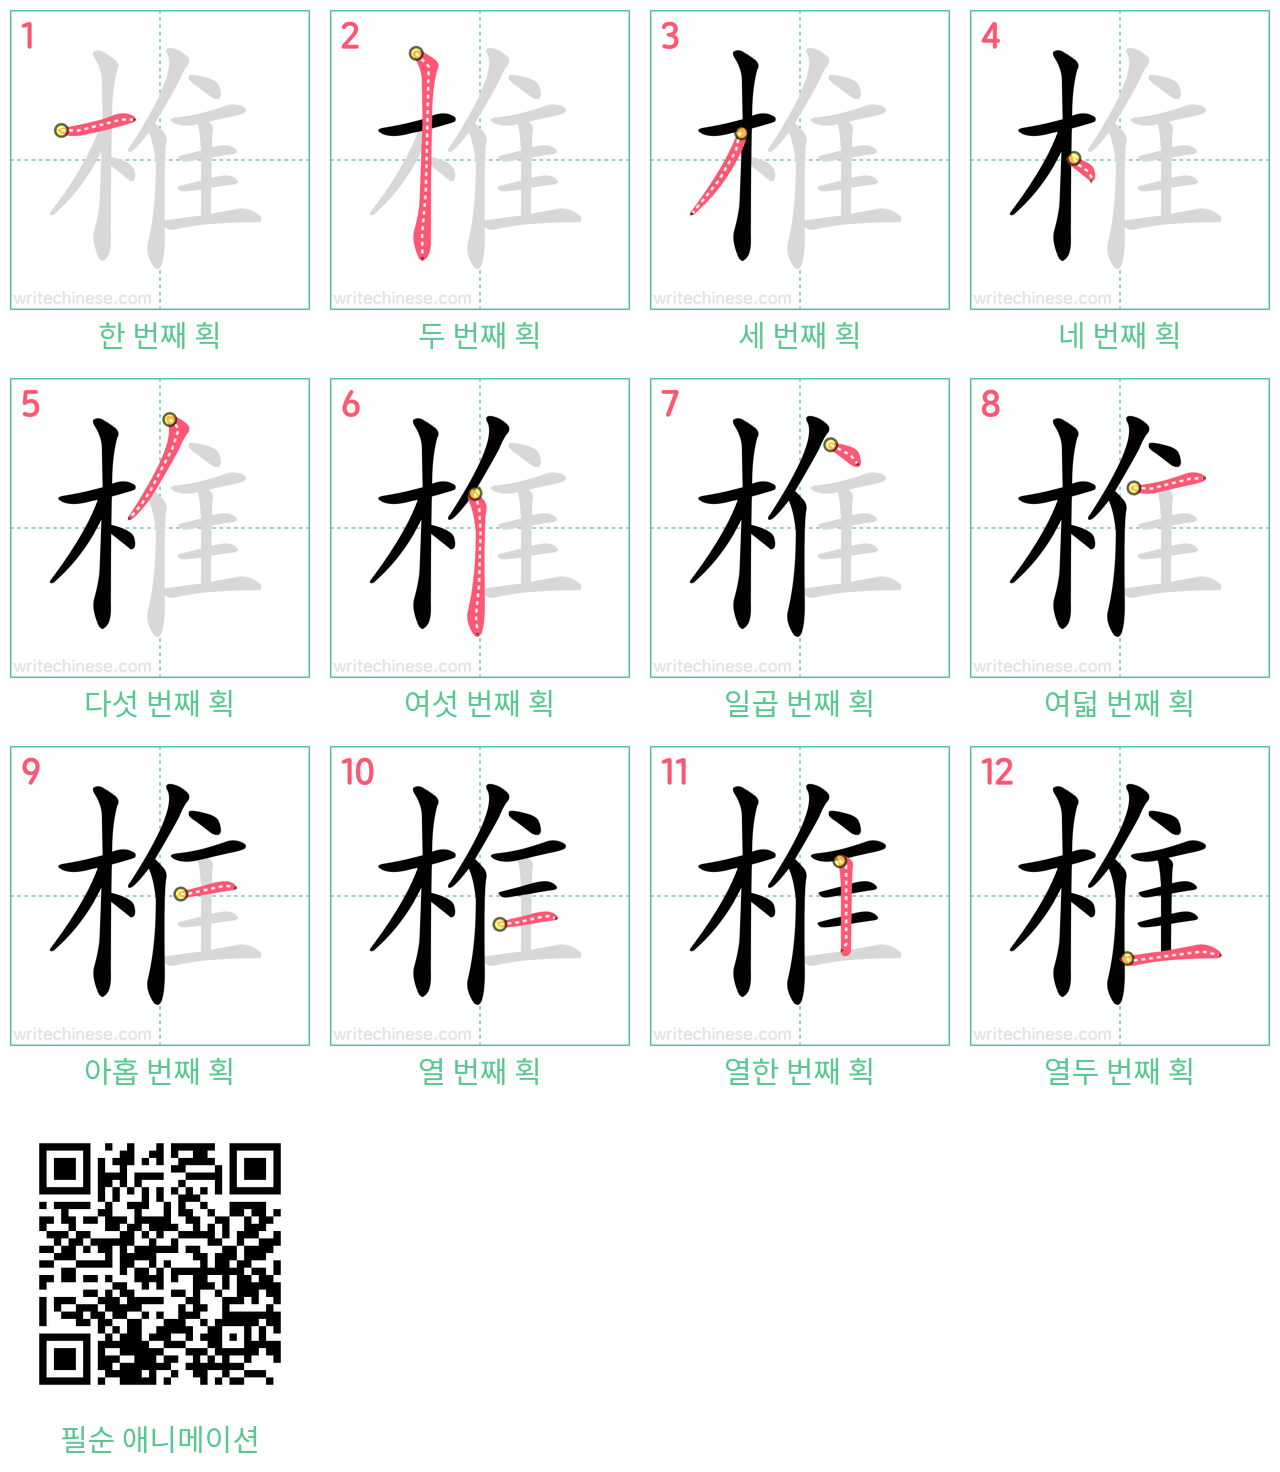 椎 step-by-step stroke order diagrams